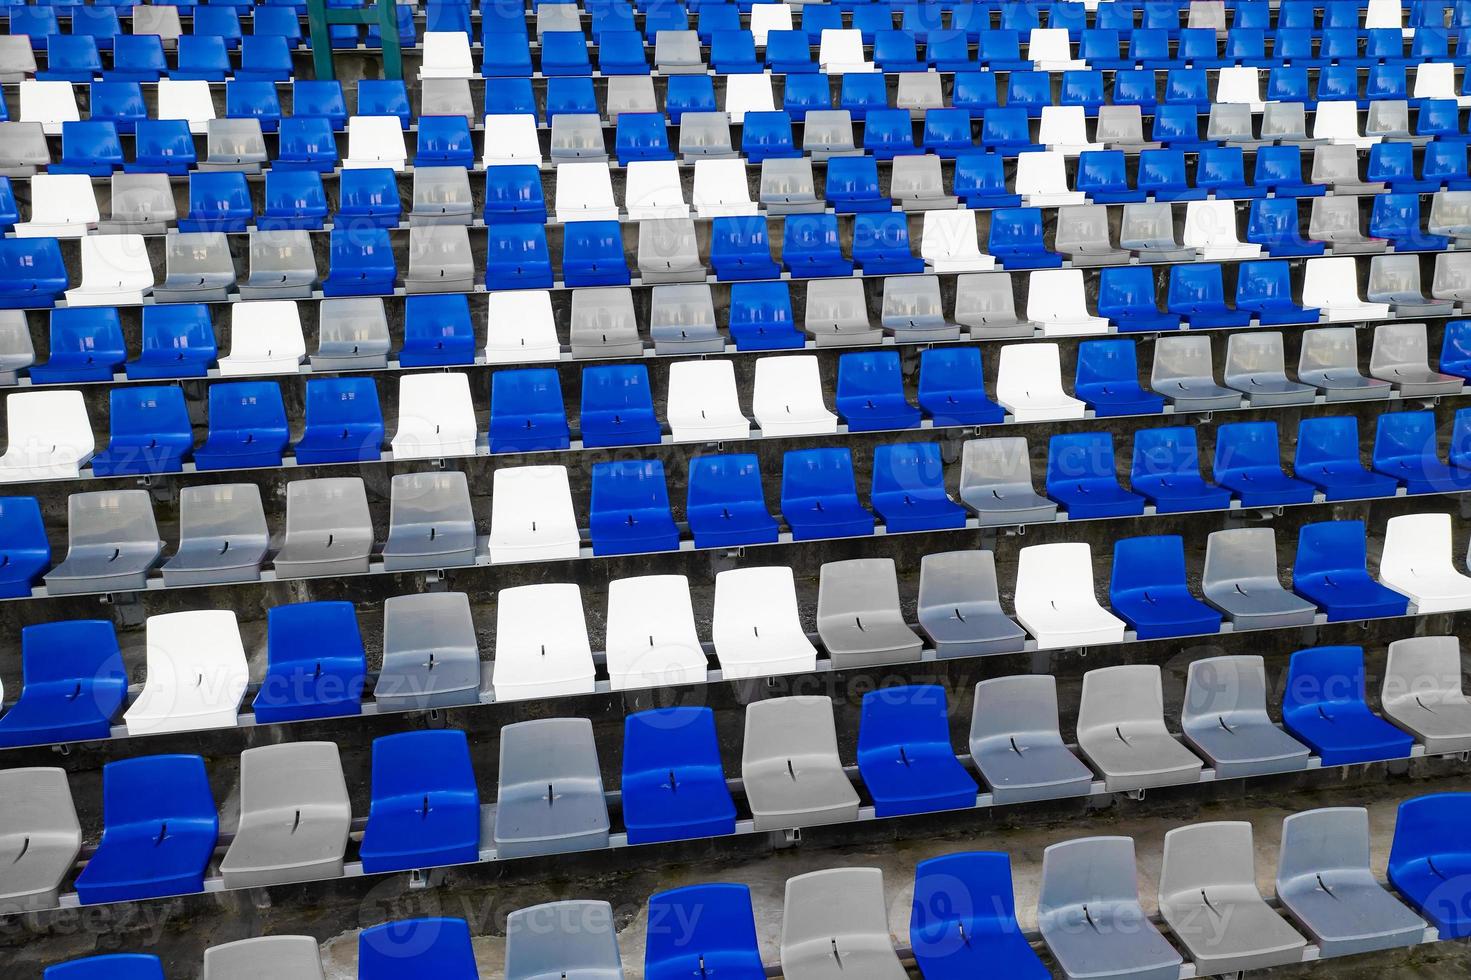 arenor amfiteater tomma plastsäten på stadion. många tomma platser för åskådare på läktaren för fotbollsfans och andra utomhussporter.en plats offentliga myndigheter skapar för allmänheten. foto